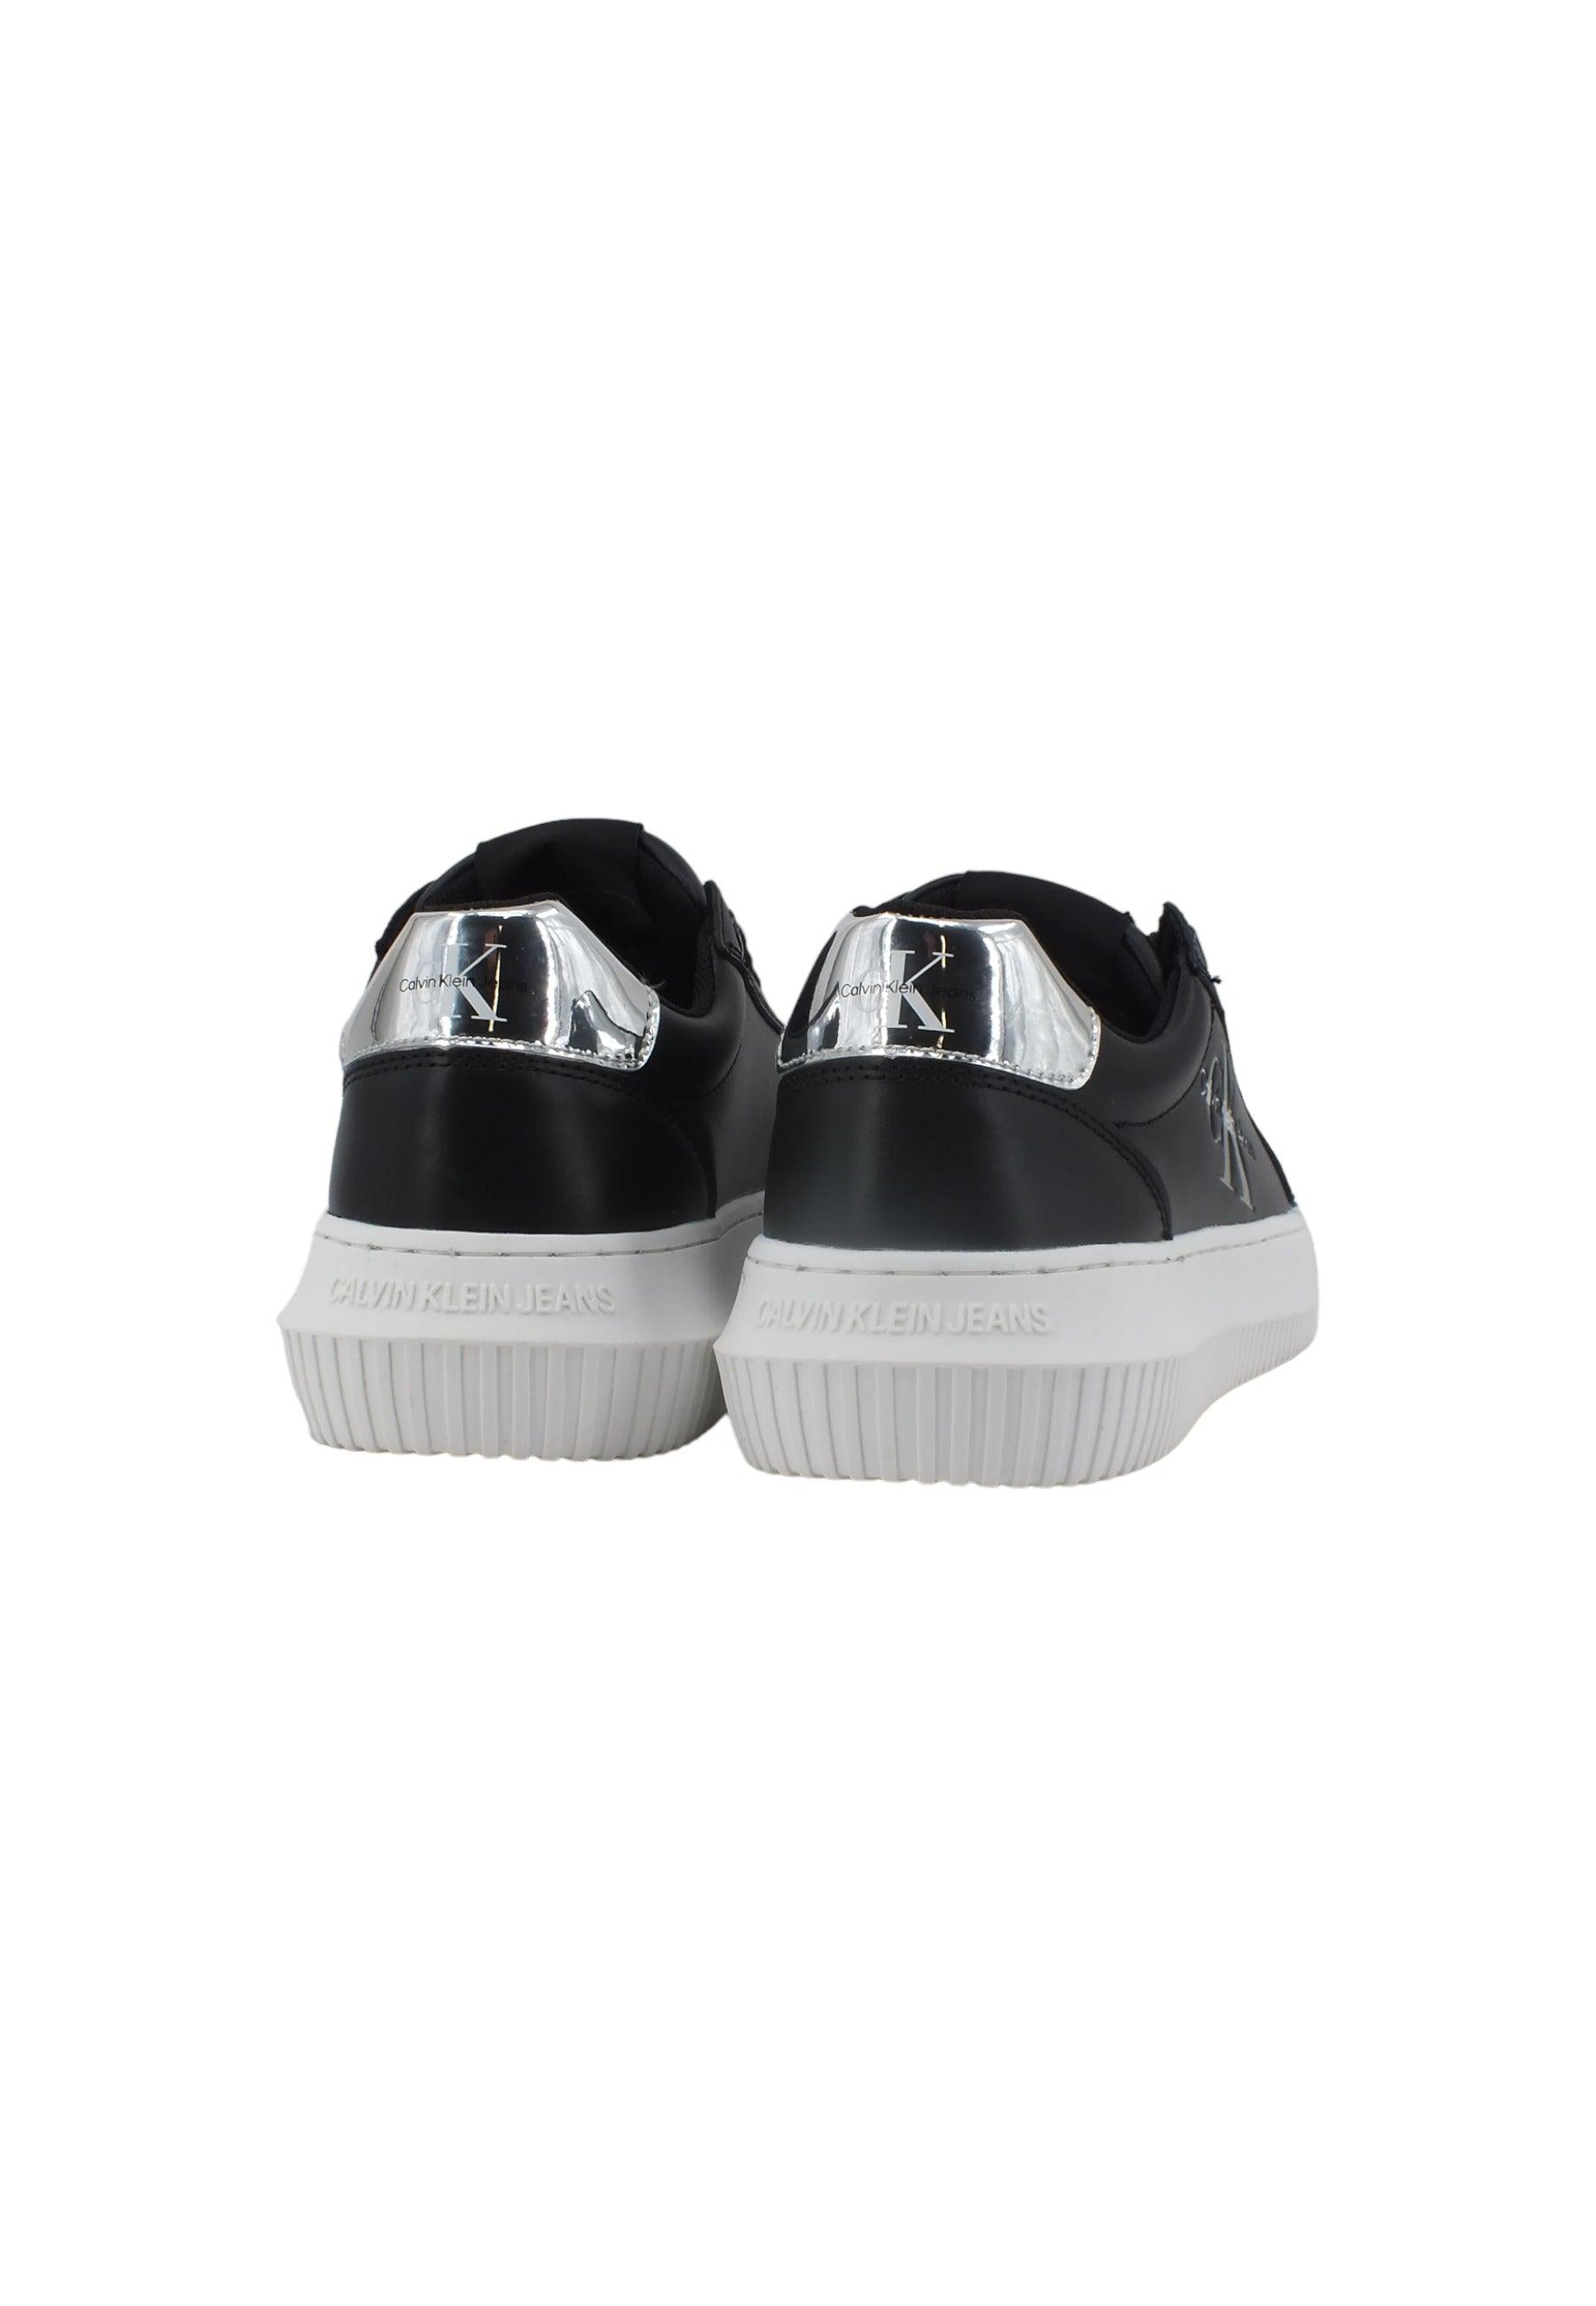 CALVIN KLEIN Chunky Cupsole Sneaker Donna Black Silver YW0YW01224 - Sandrini Calzature e Abbigliamento